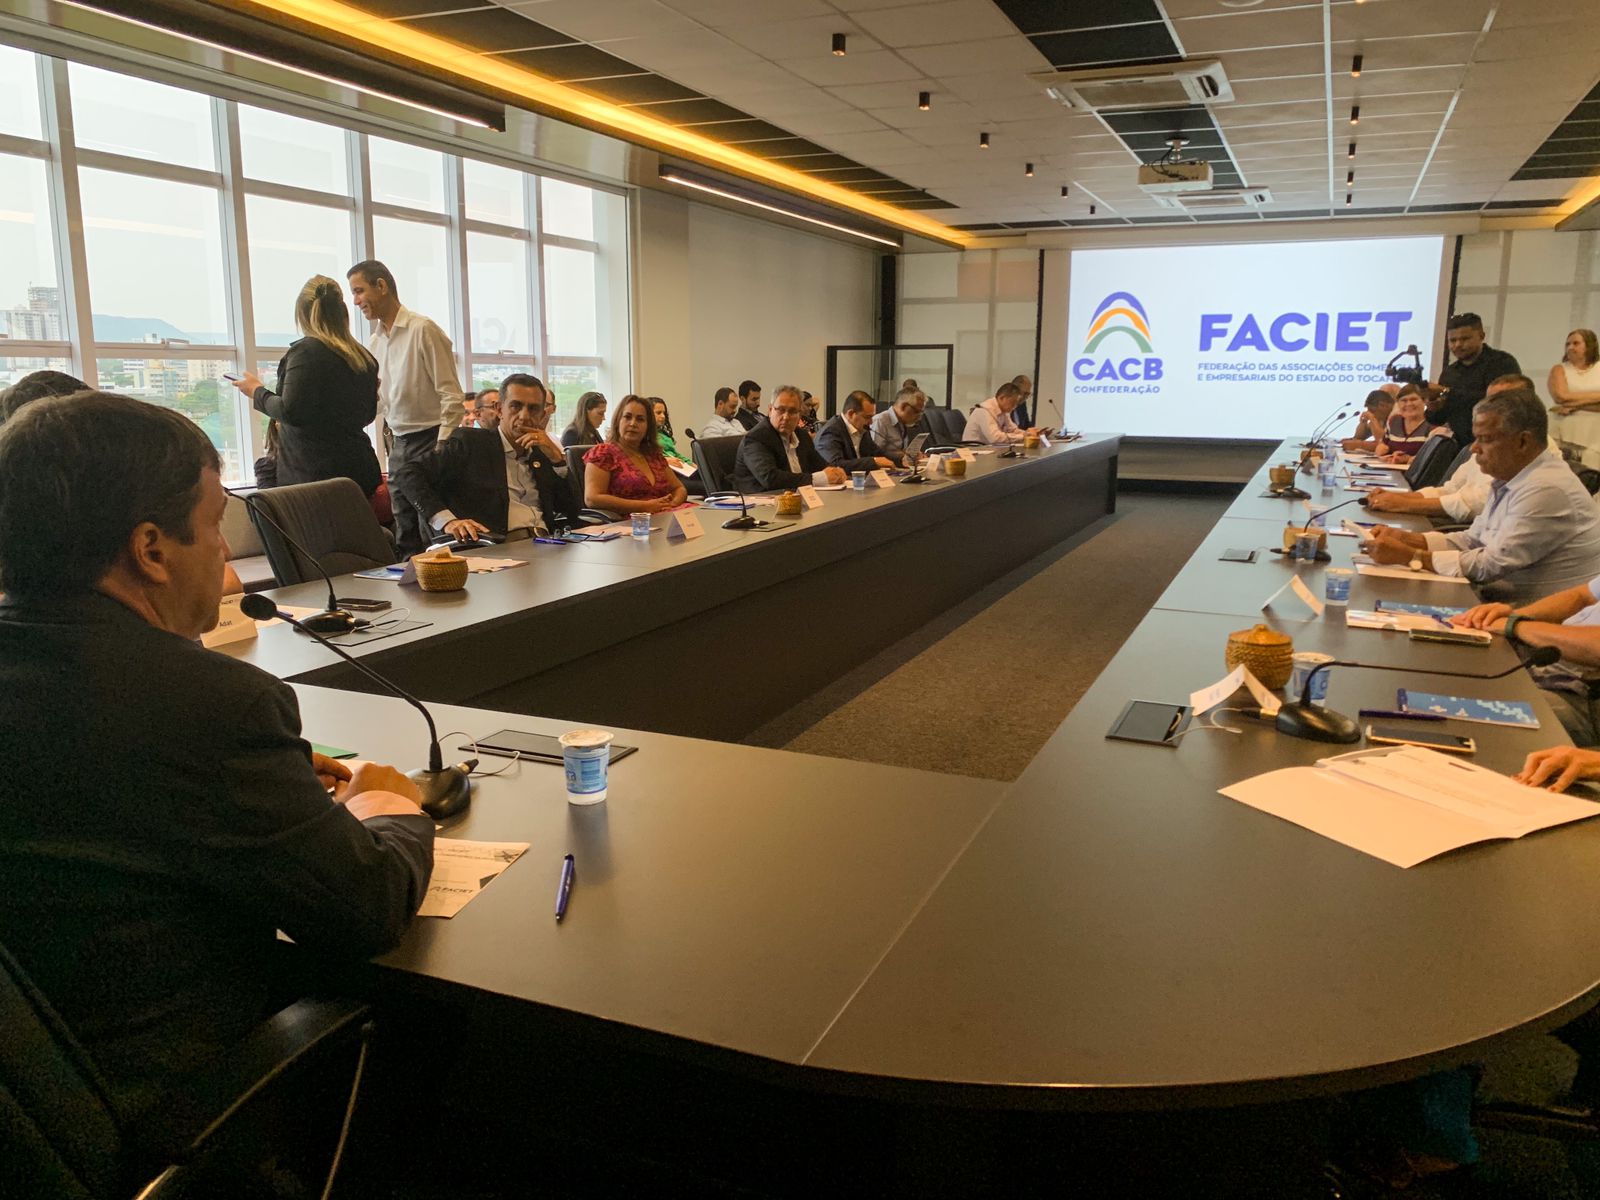 Faciet realiza reunião estratégica com membros da diretoria e conselheiros